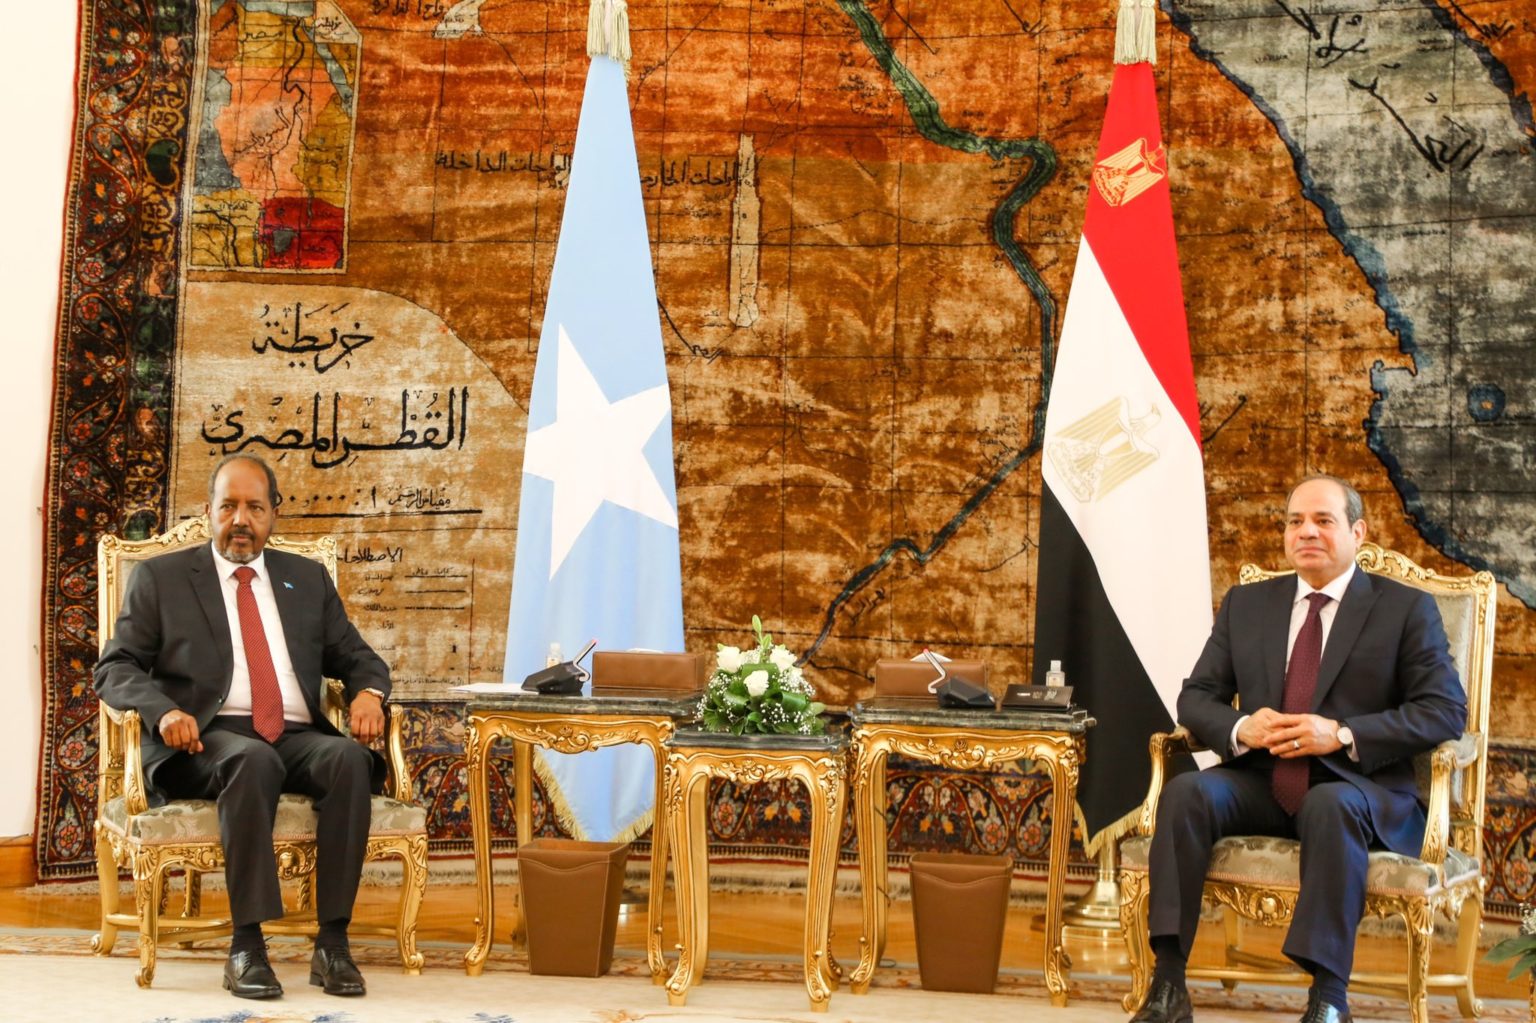 , الرئيس المصري يؤكد استعداد بلاده لمواصلة دعم الصومال لبناء وترسيخ مؤسسات الدولة